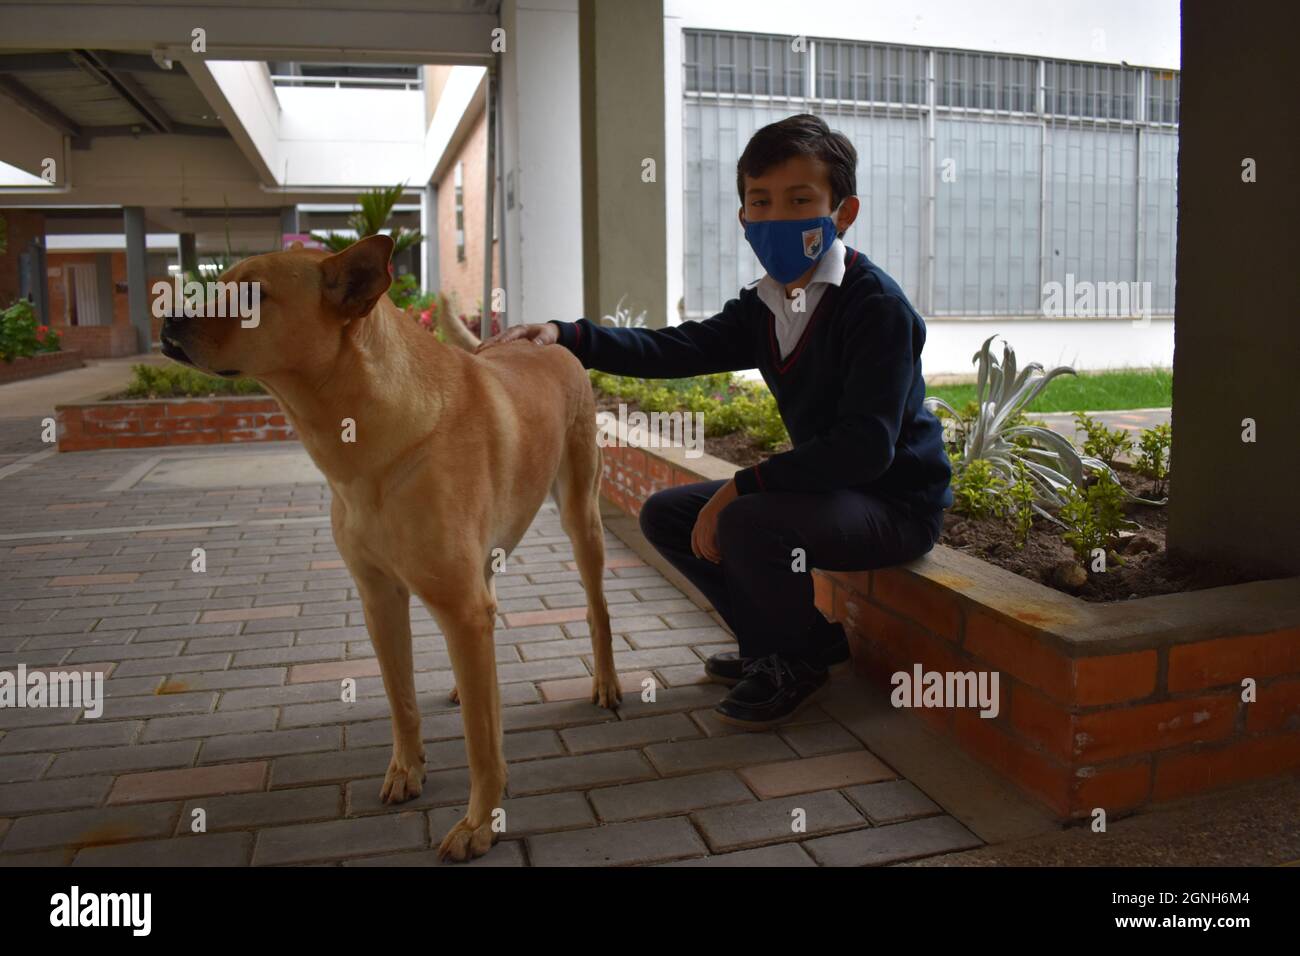 MOSQUERA, KOLUMBIEN - 31. Aug 2021: Ein junger Student mit einer Sicherheitsmaske, der mit seinem braunen niedlichen Hund auf dem Stein sitzt Stockfoto